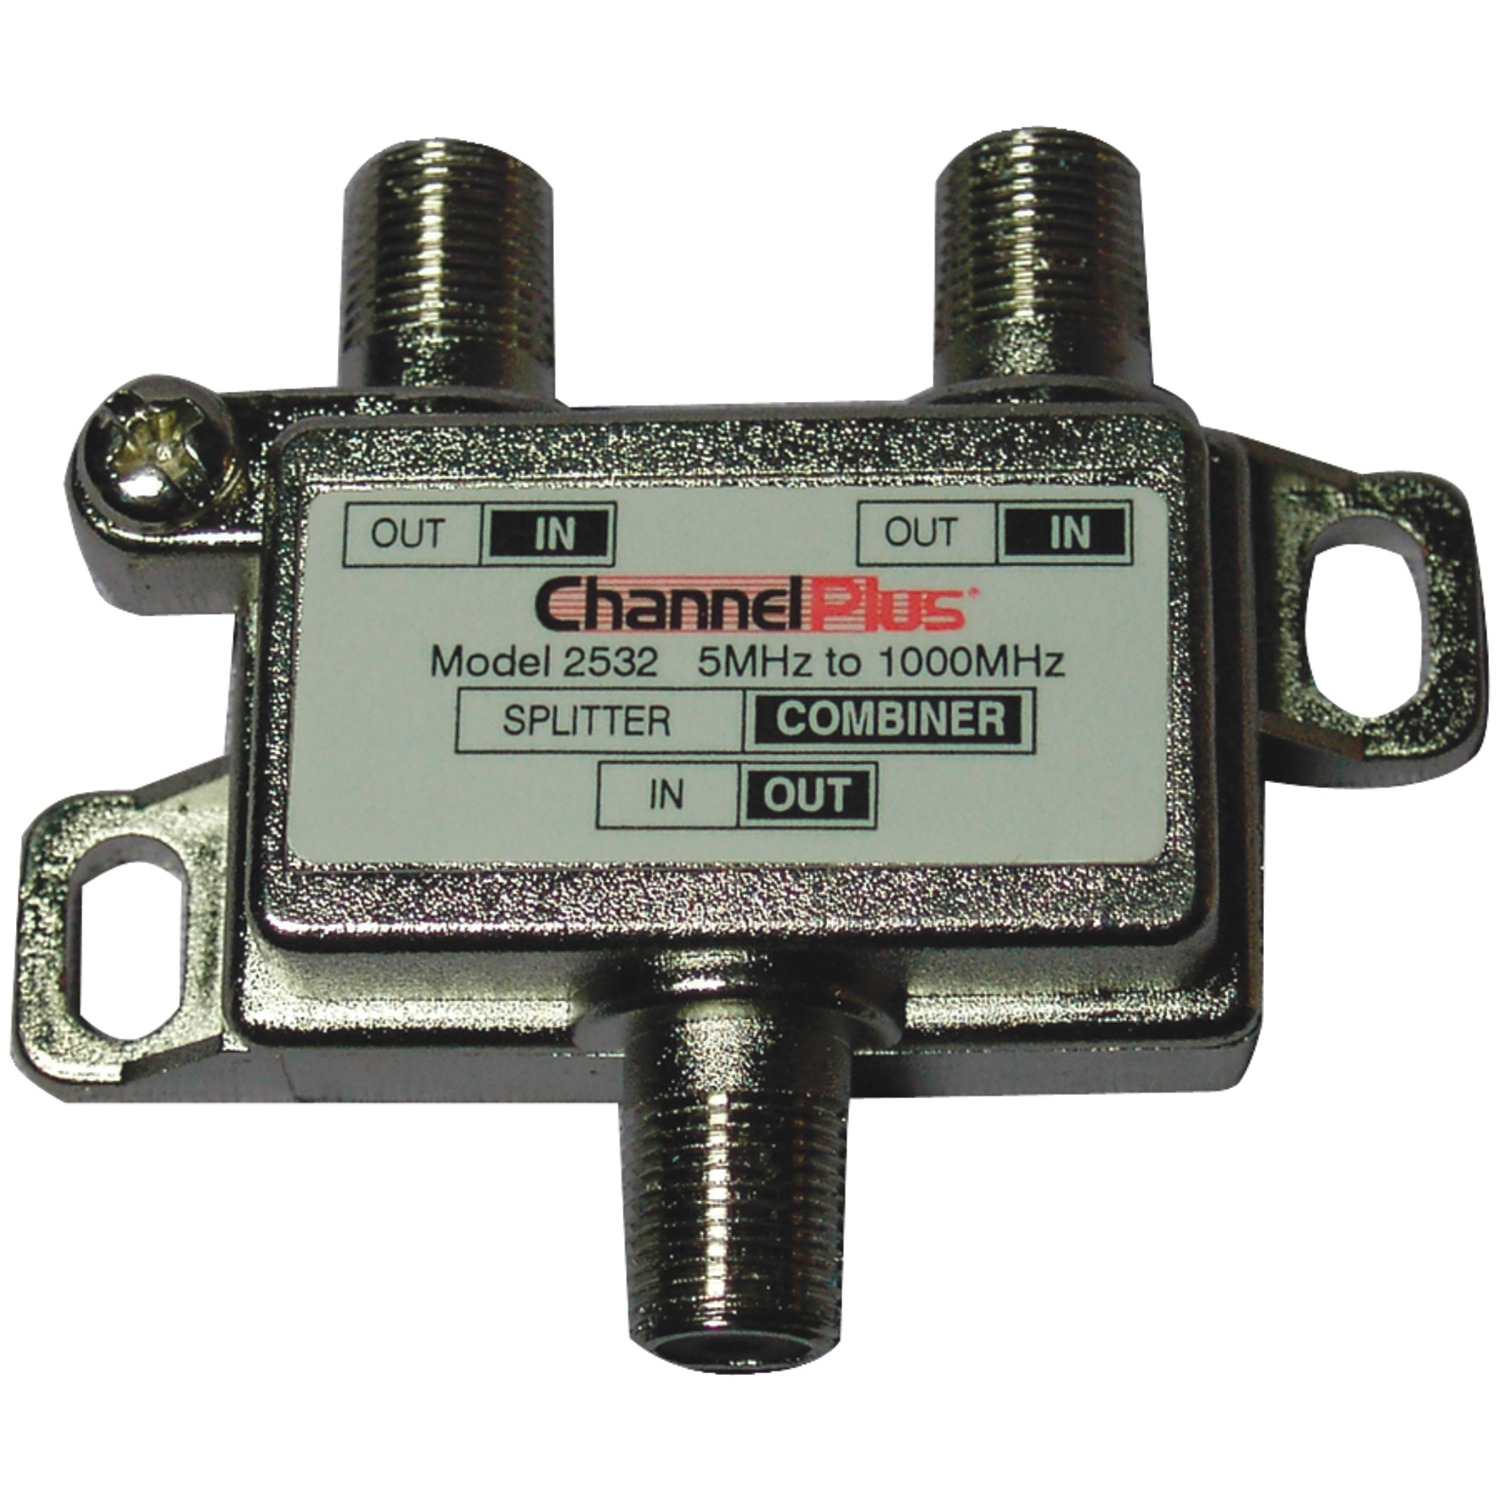 ChannelPlus 2532 Splitter/Combiner, 2-way - image 1 of 2